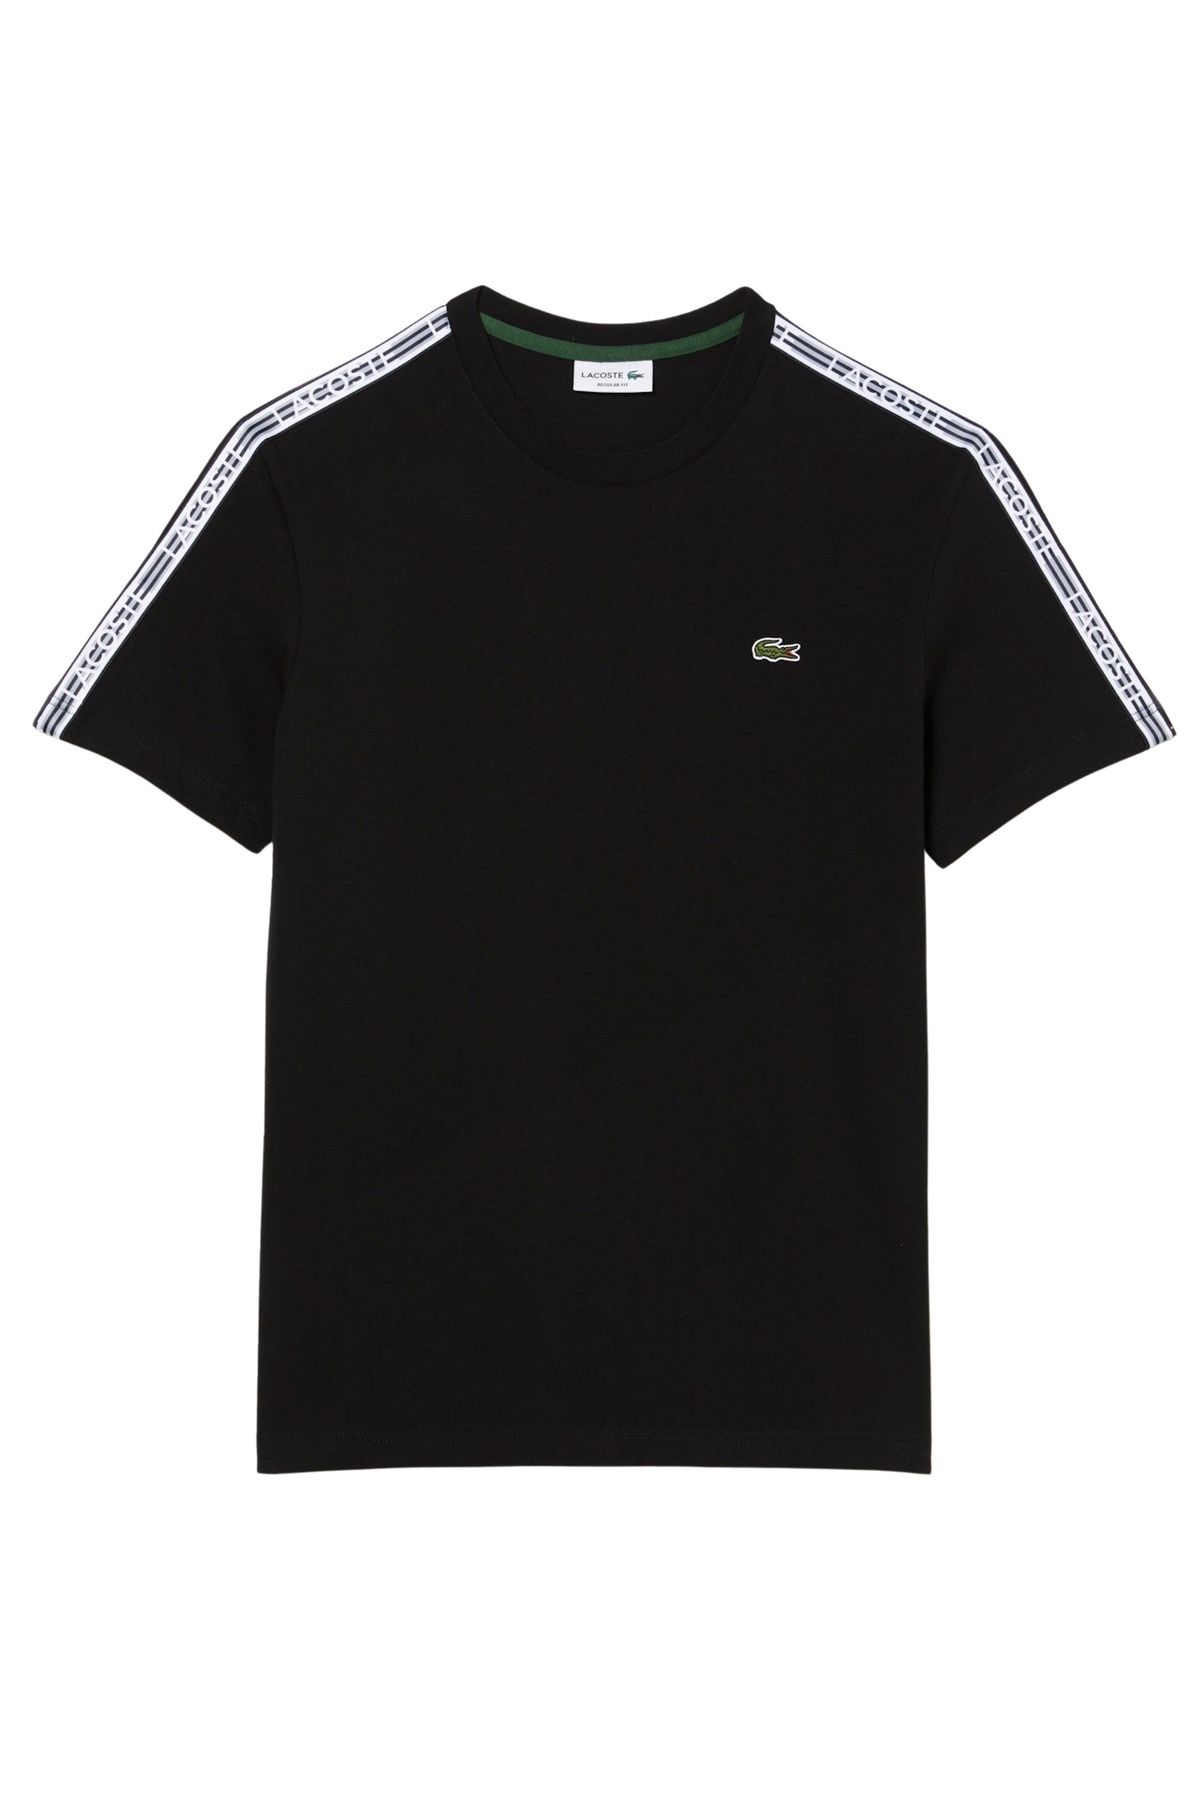 Trendyol Label-Tapes und gesticktem Kurzarmshirt - T-Shirt Rundhalsausschnitt, Logo mit Lacoste